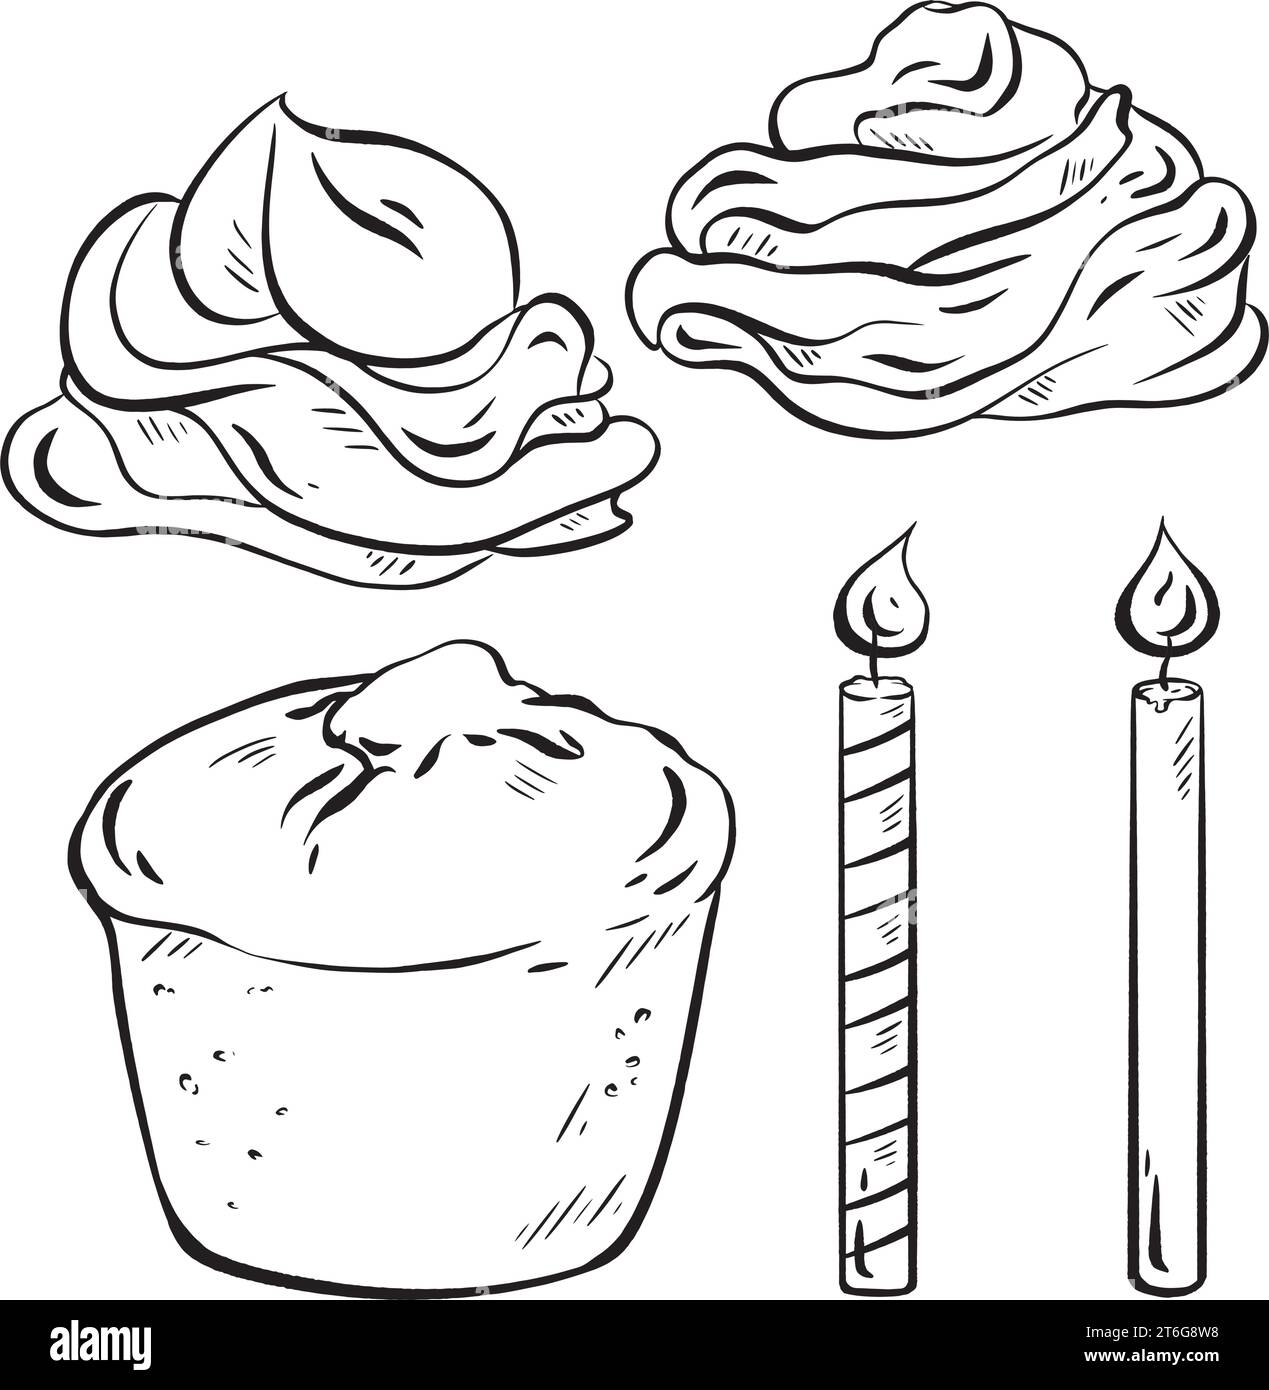 Schizzo vettoriale disegnato a mano. Costruttore di muffin di compleanno. Base in spugna, rotoli di crema sulla parte superiore. Aggiungi festività con le candele. Esprimi un desiderio e fai saltare in aria la candela Illustrazione Vettoriale